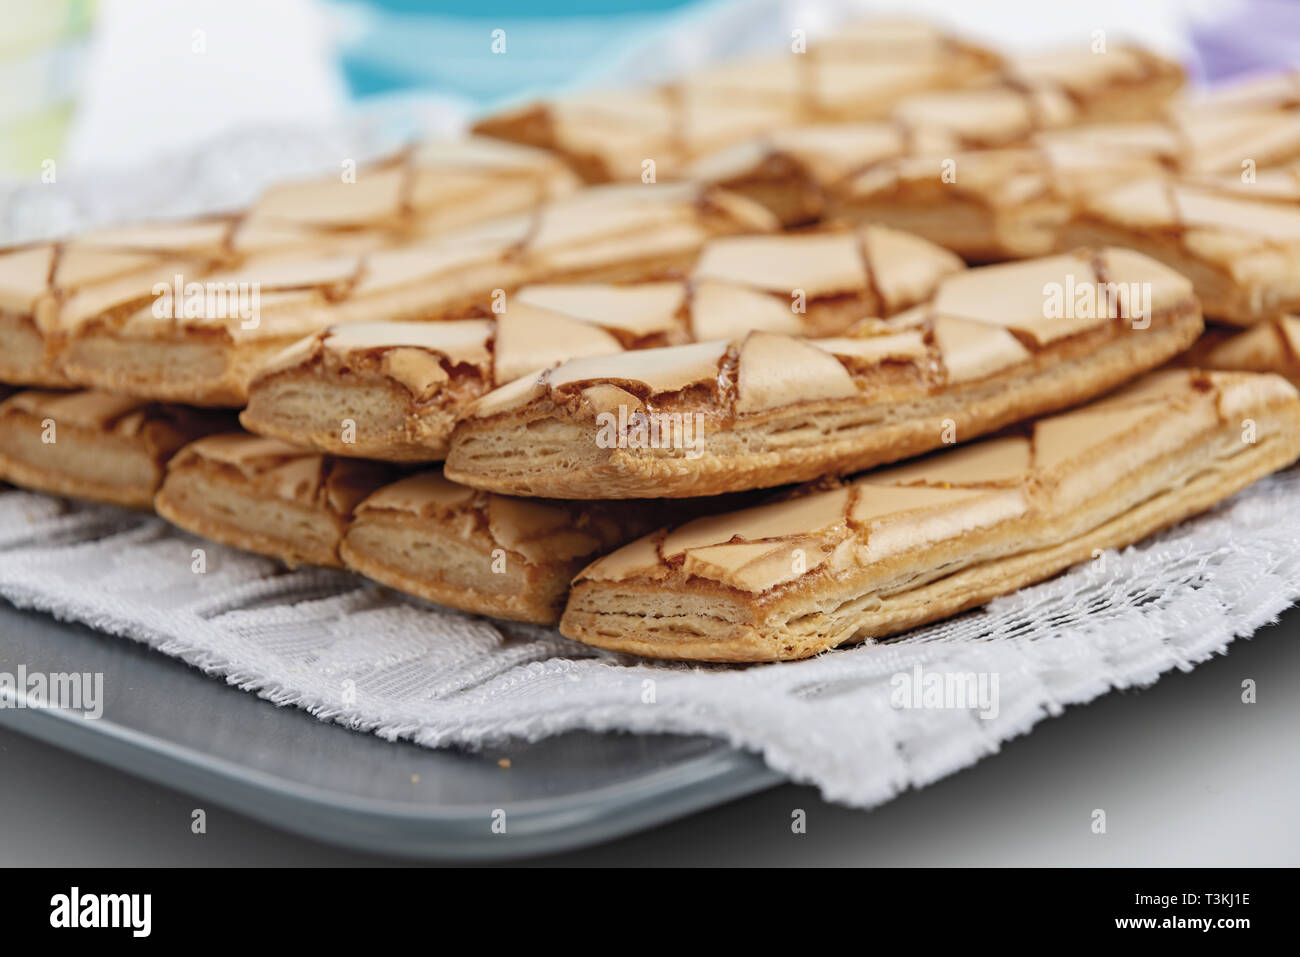 biscotti di pasta sfoglia dal basso altra vista Stock Photo